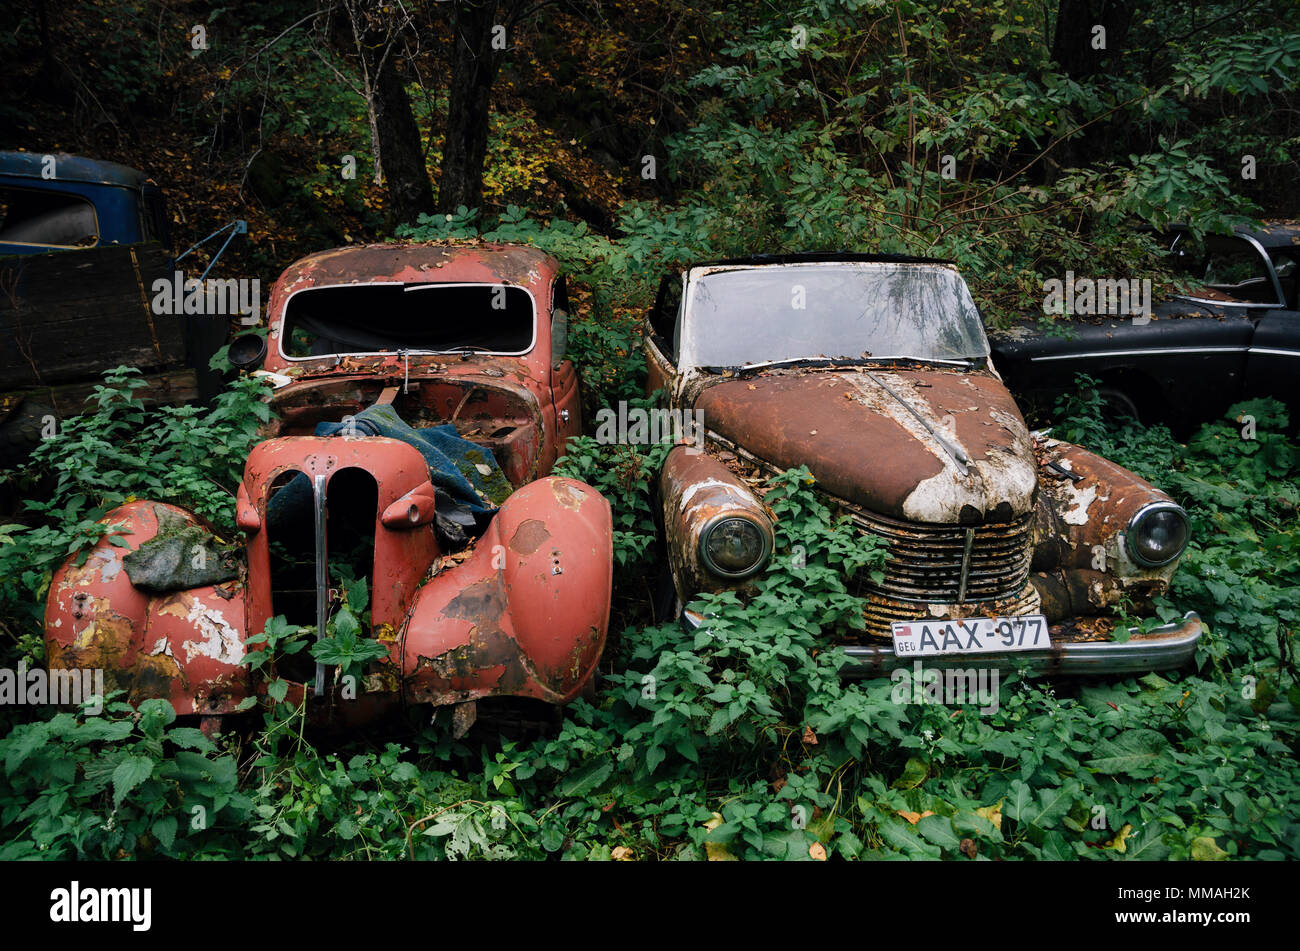 Pasanauri, Georgien - 21. Oktober 2016: Alte verrostet Schrott retro Auto Opel Kapitan 1948, dass im Wald Holz abgebrochen wurde Stockfoto